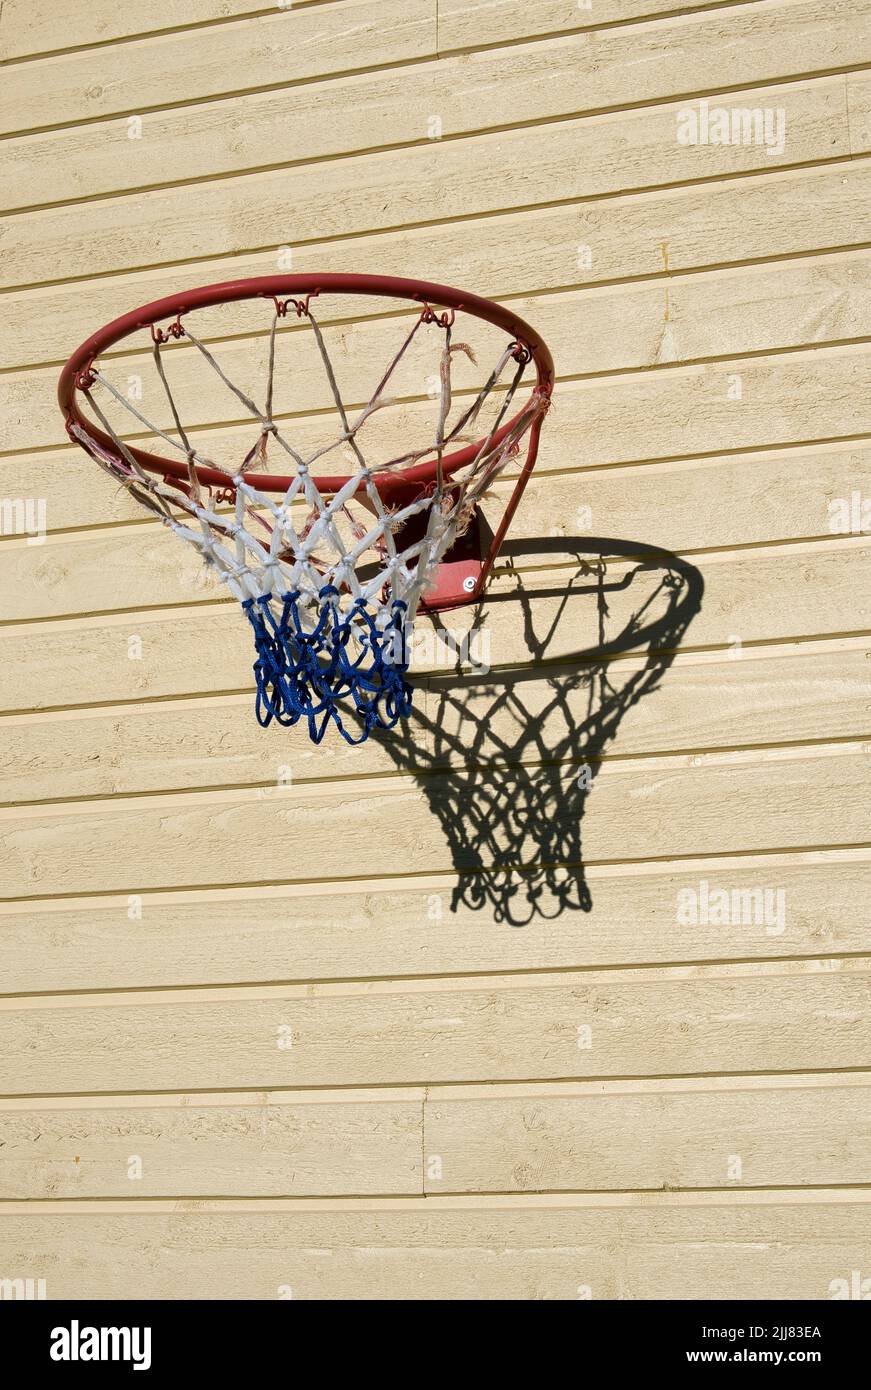 aro de baloncesto en la pared del edificio de madera Foto de stock